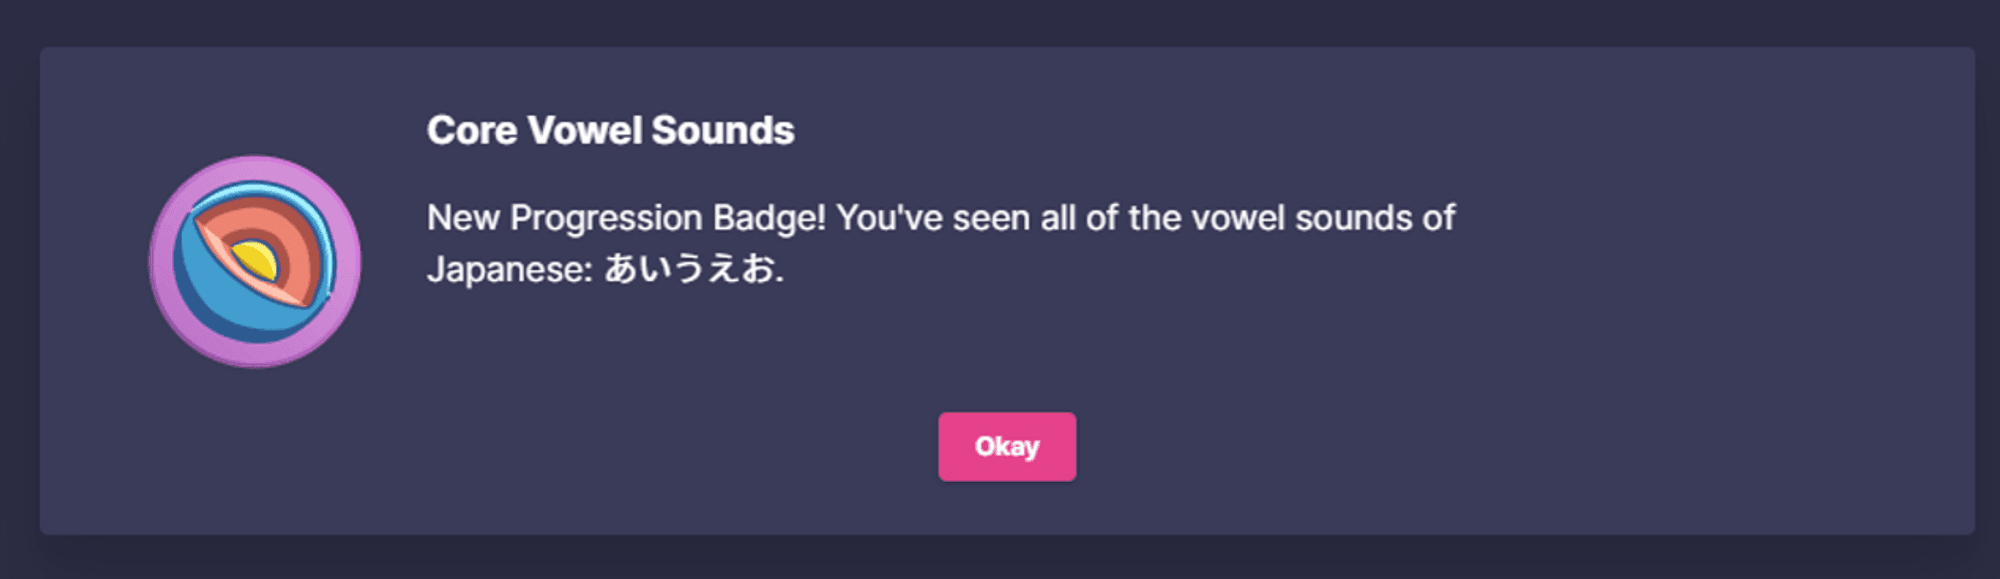 core_vowel_sounds_badge.png